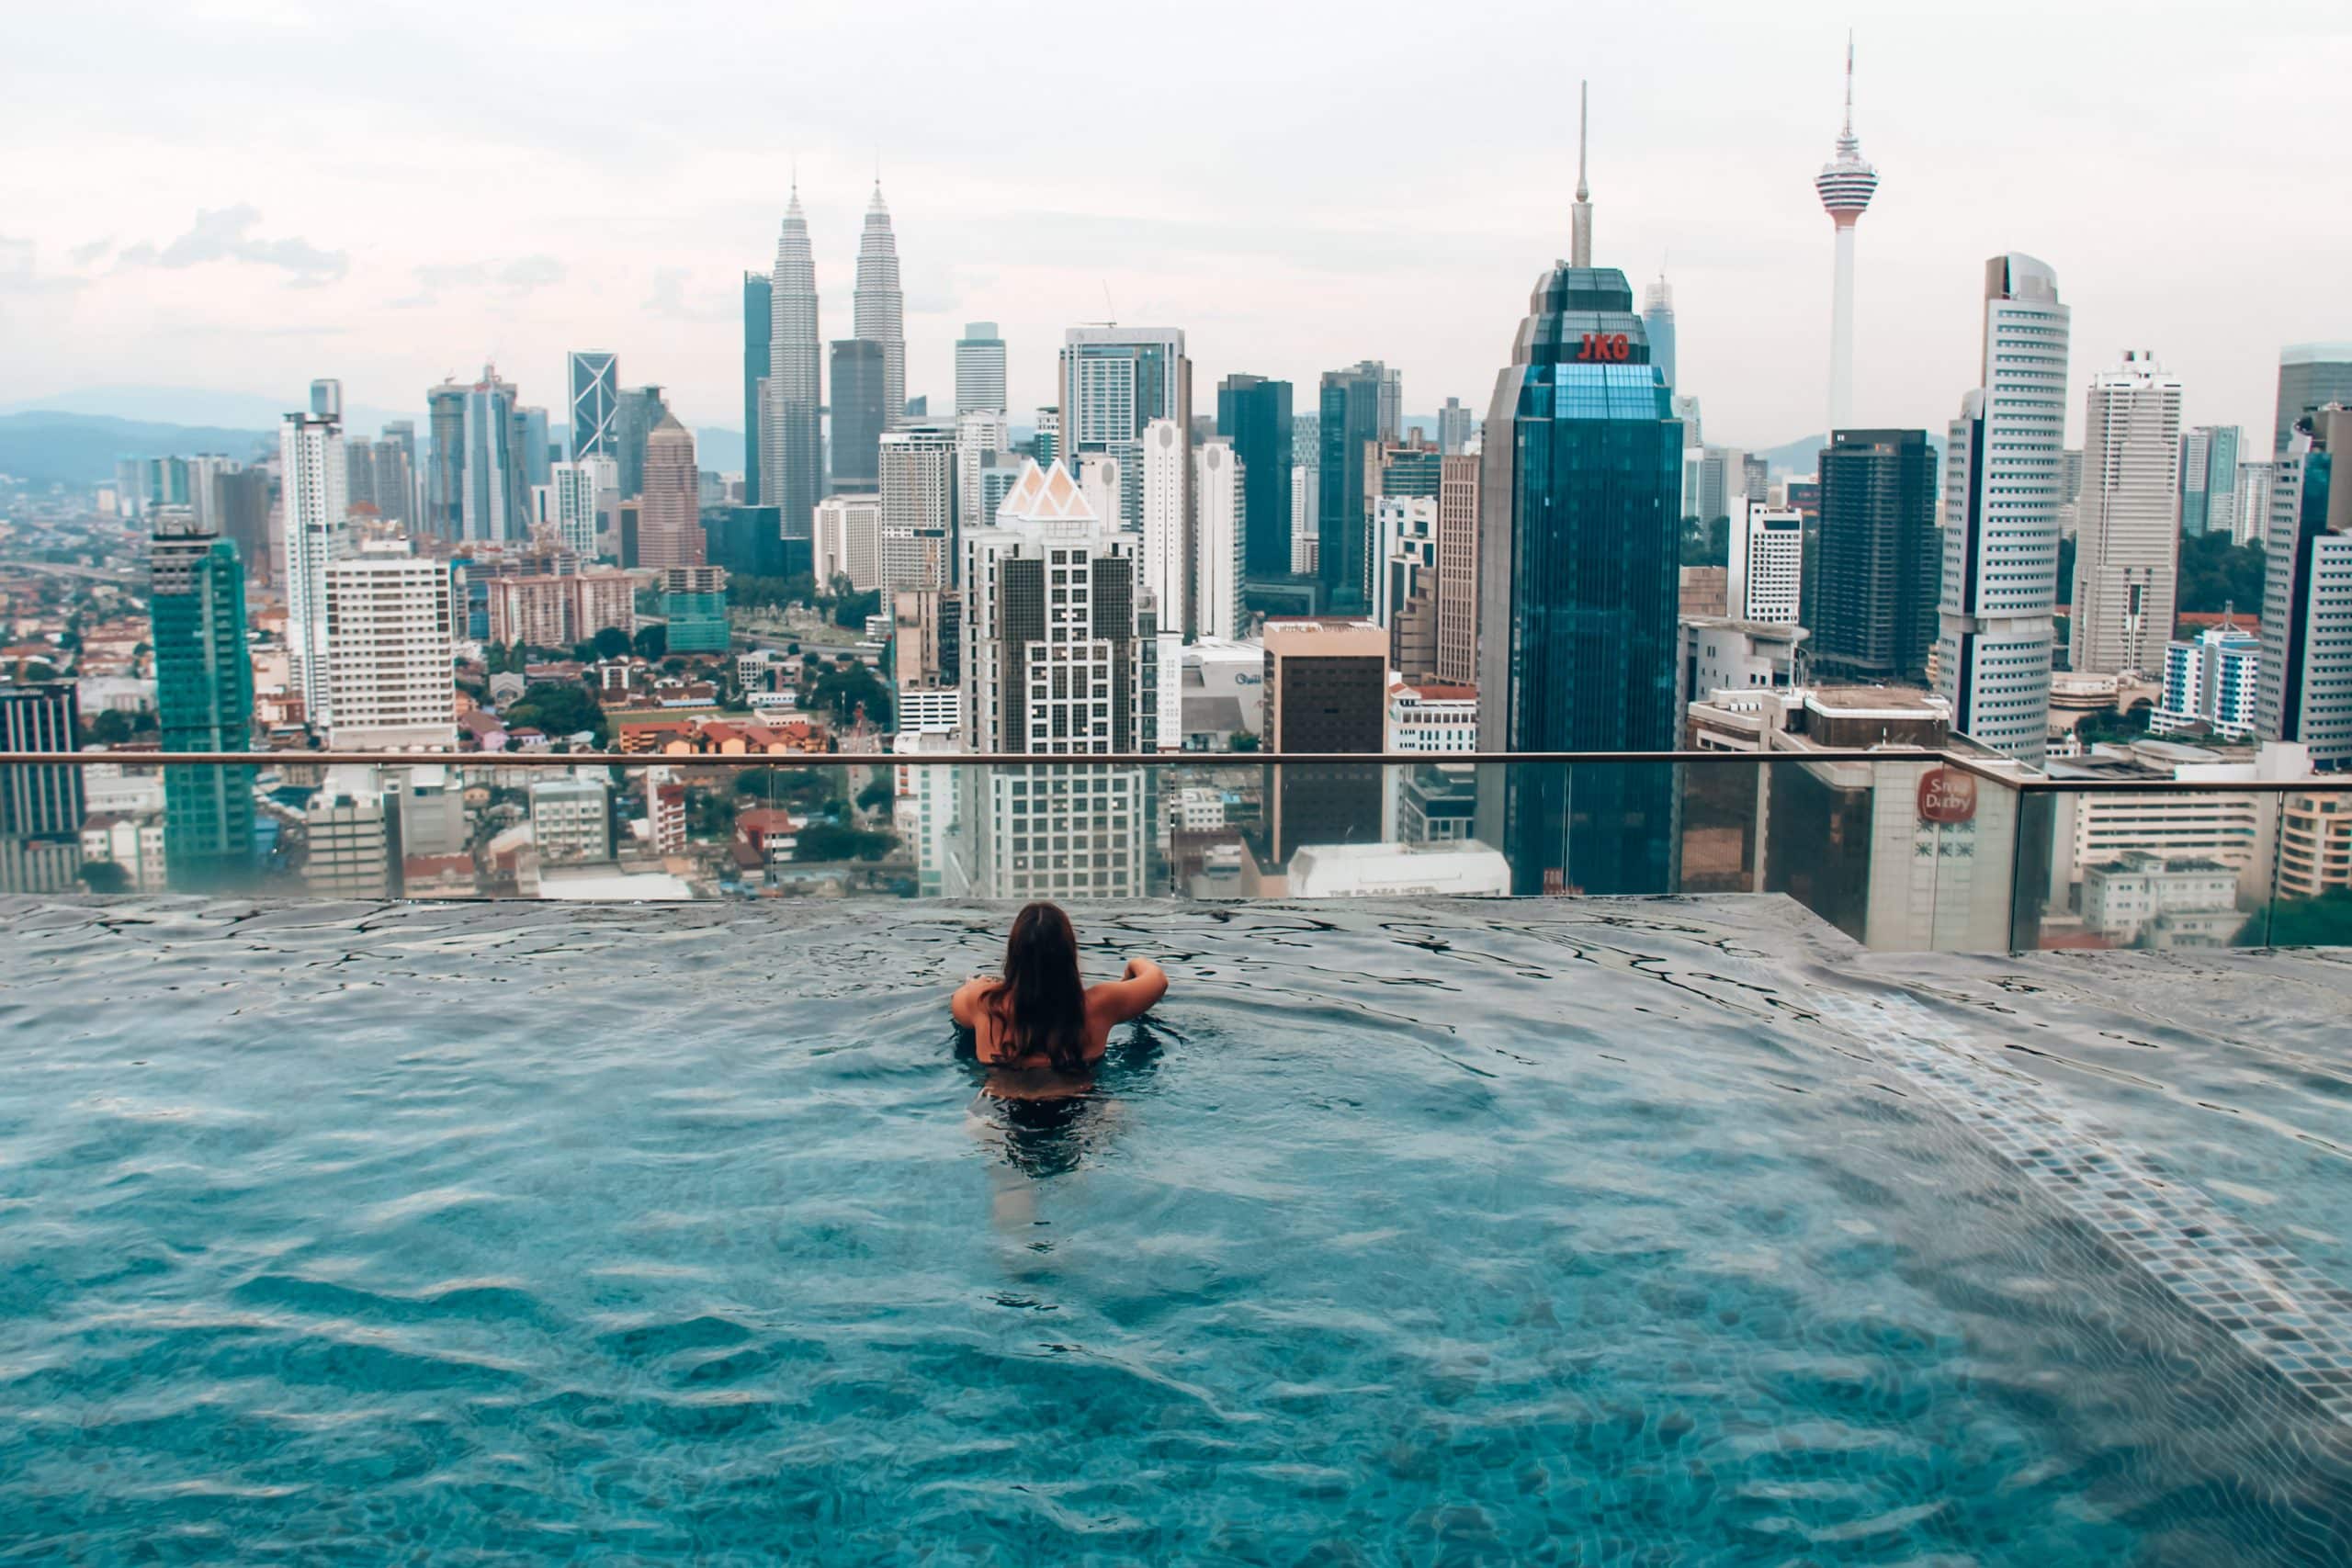 Hostel met infinity pool | Kuala Lumpur City Guide